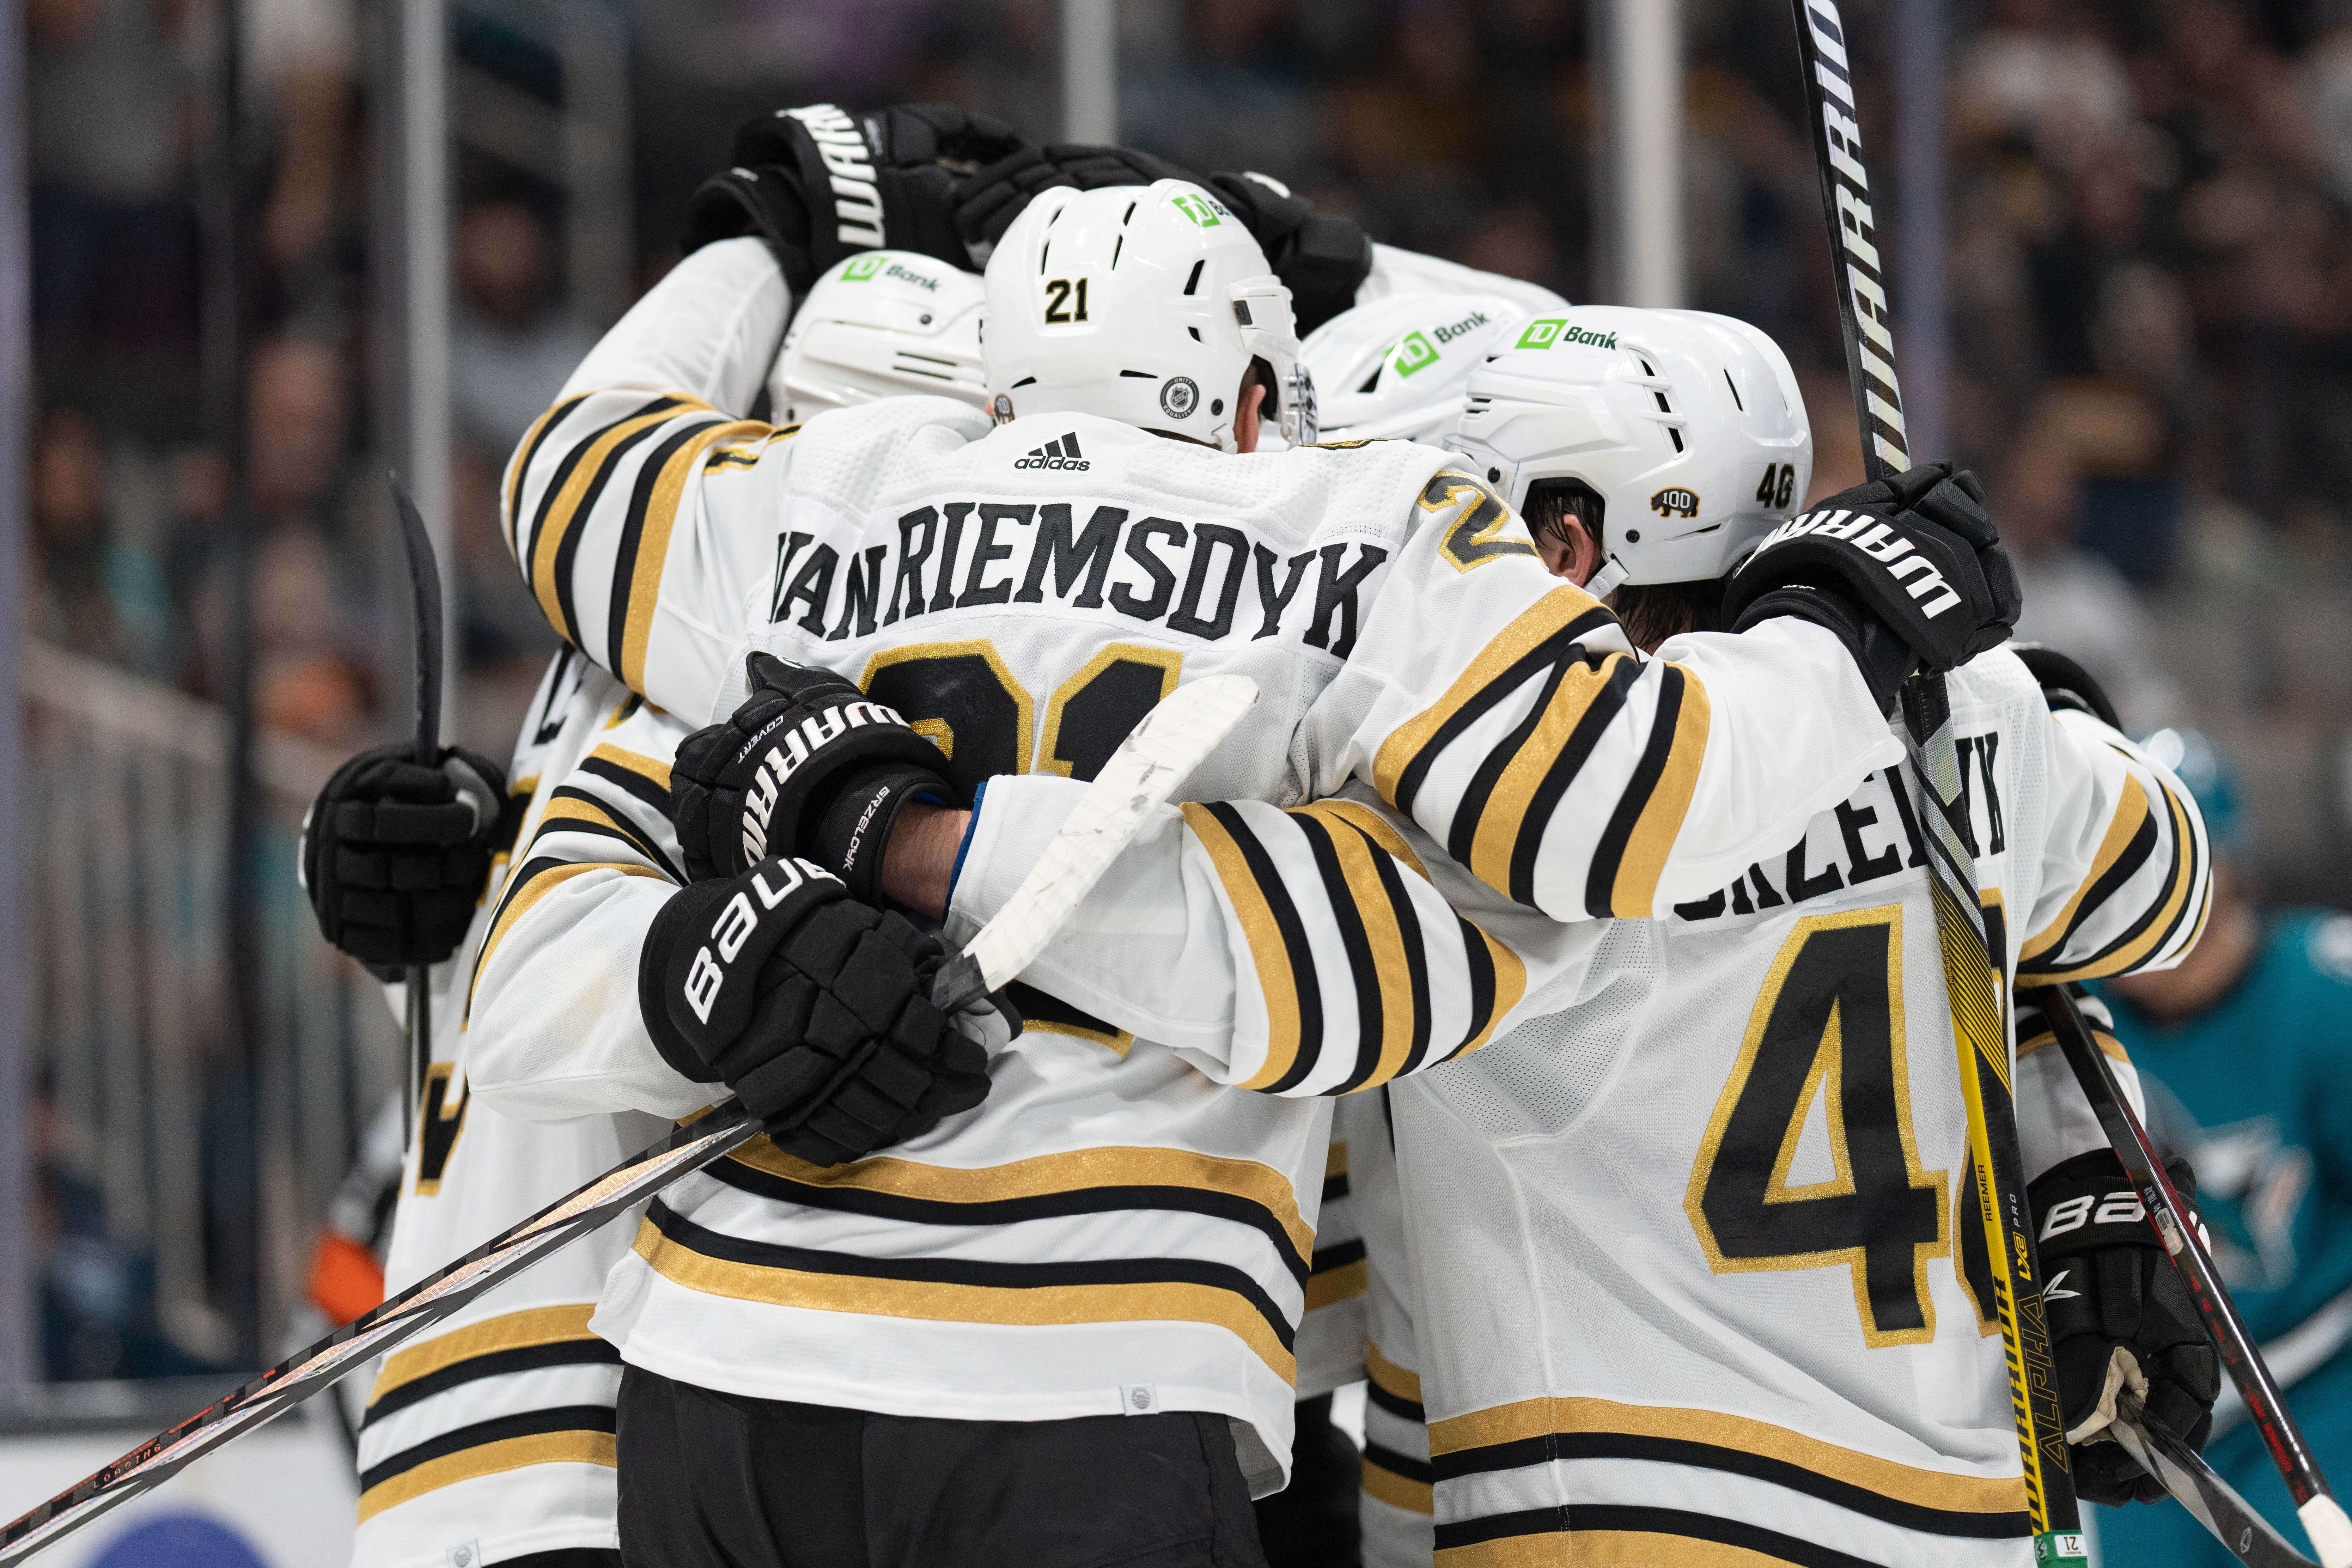 David Pastrnak scores again as unbeaten Bruins top Sharks - The